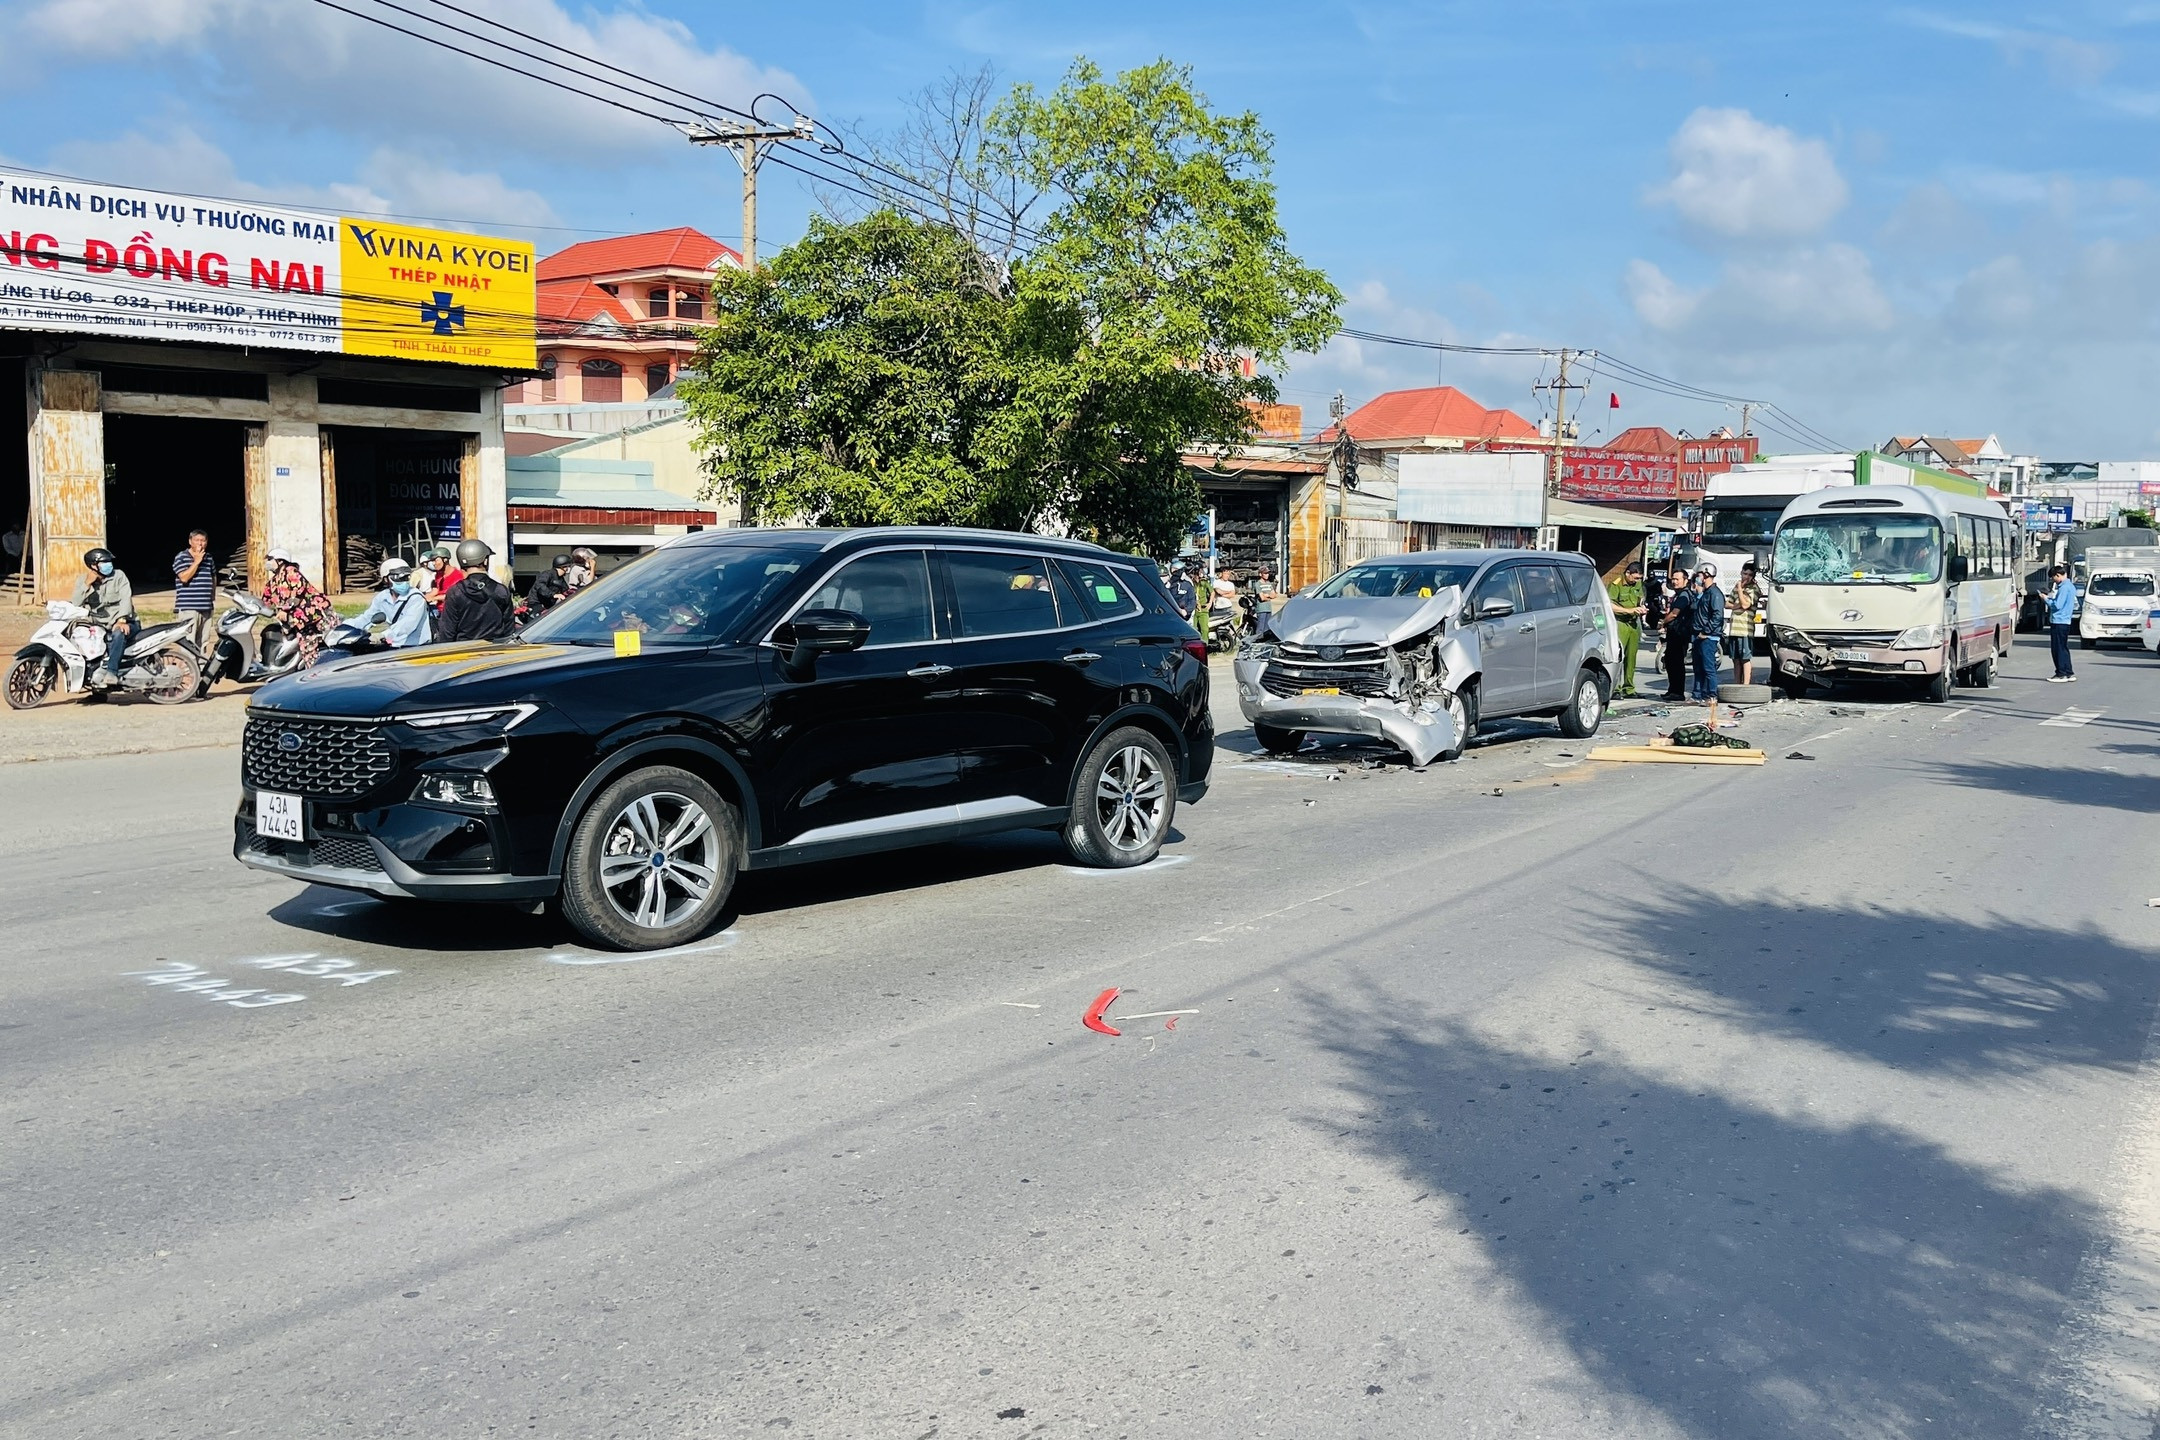 Bản tin trưa 8/8: Tai nạn ô tô liên hoàn trên QL51, người phụ nữ bị tông tử vong